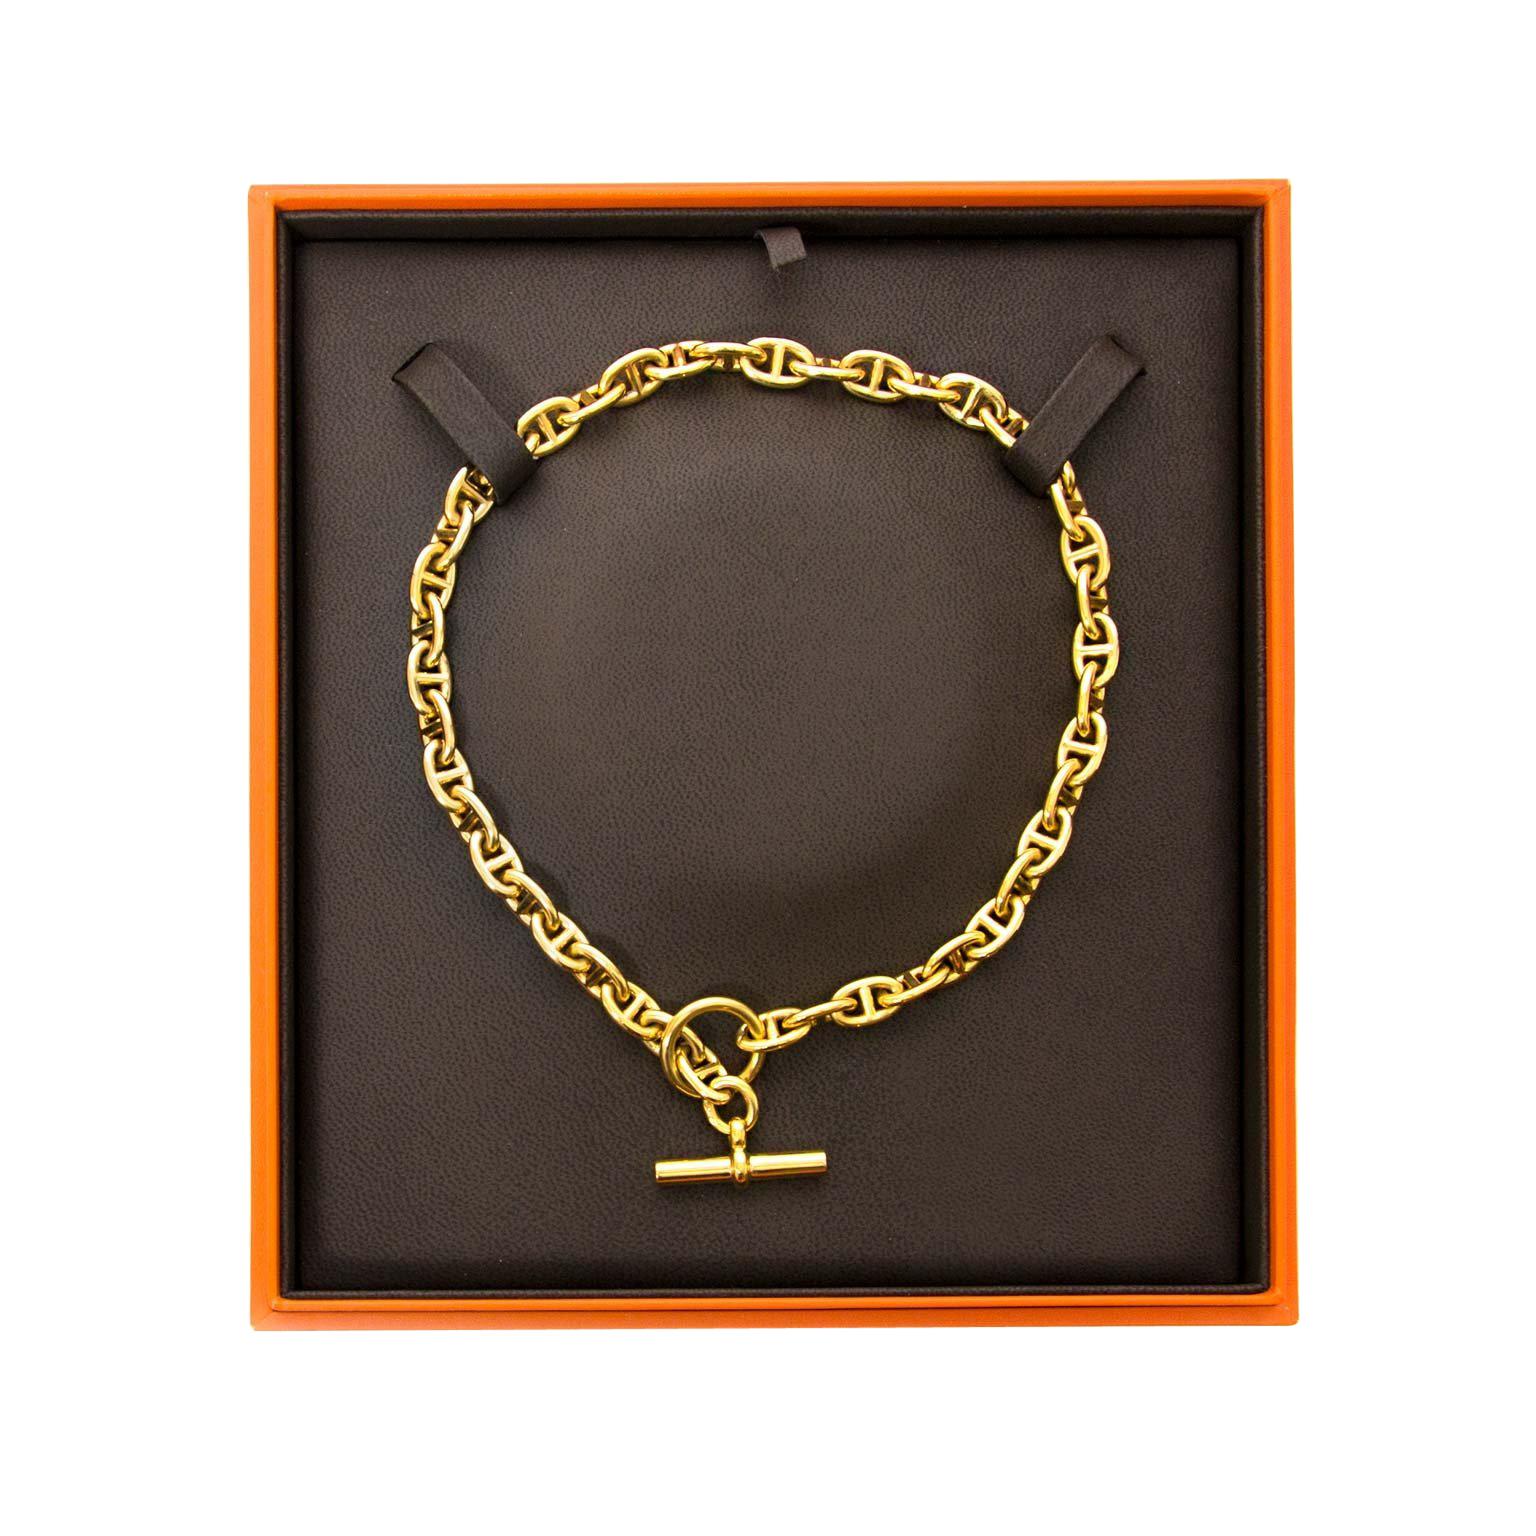 Chaine d'ancre Divine pendant, small model